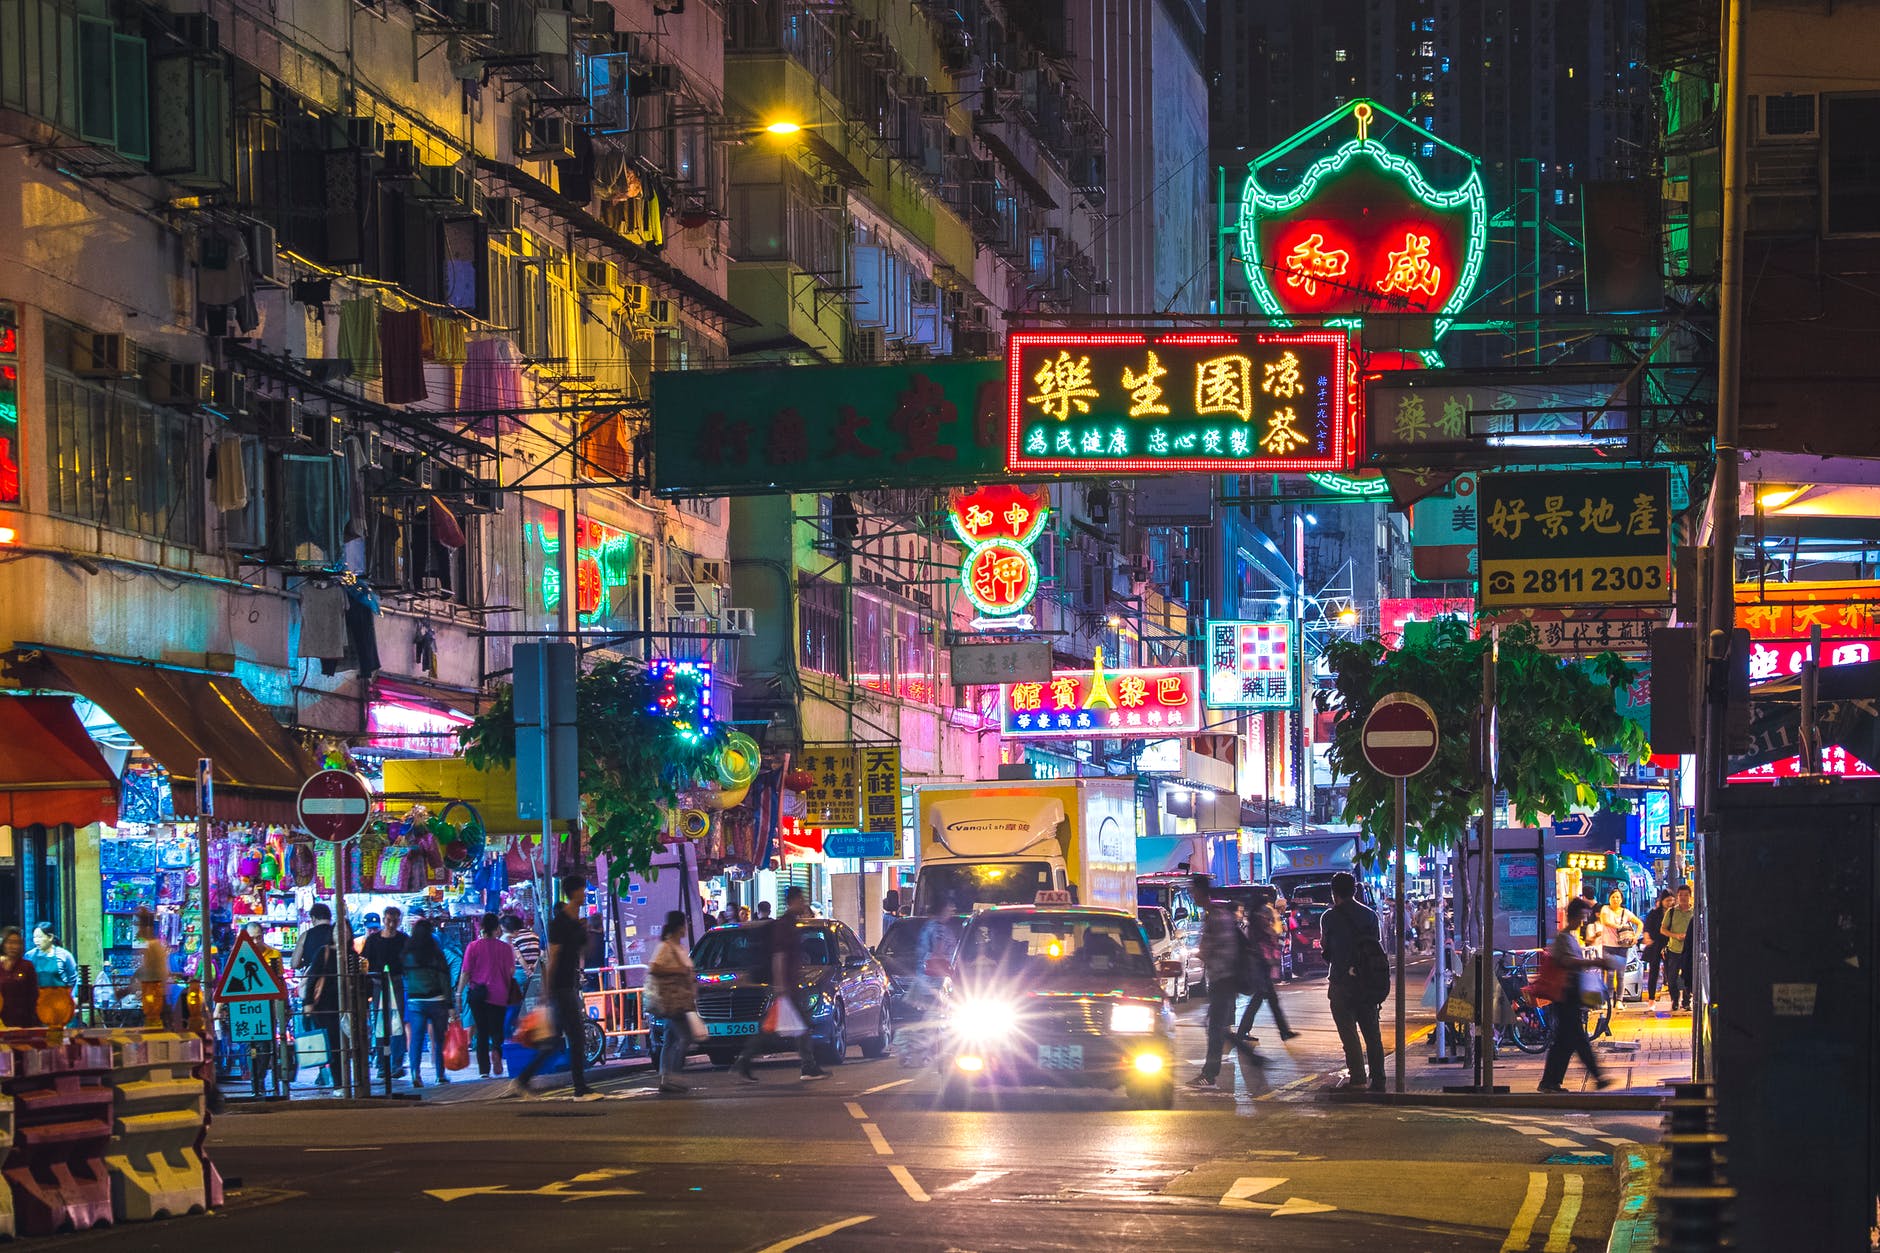 Διαμέρισμα στο Χονγκ Κογκ: Πουλήθηκε σε super τιμή,156.000 ευρώ το τετραγωνικό μέτρο